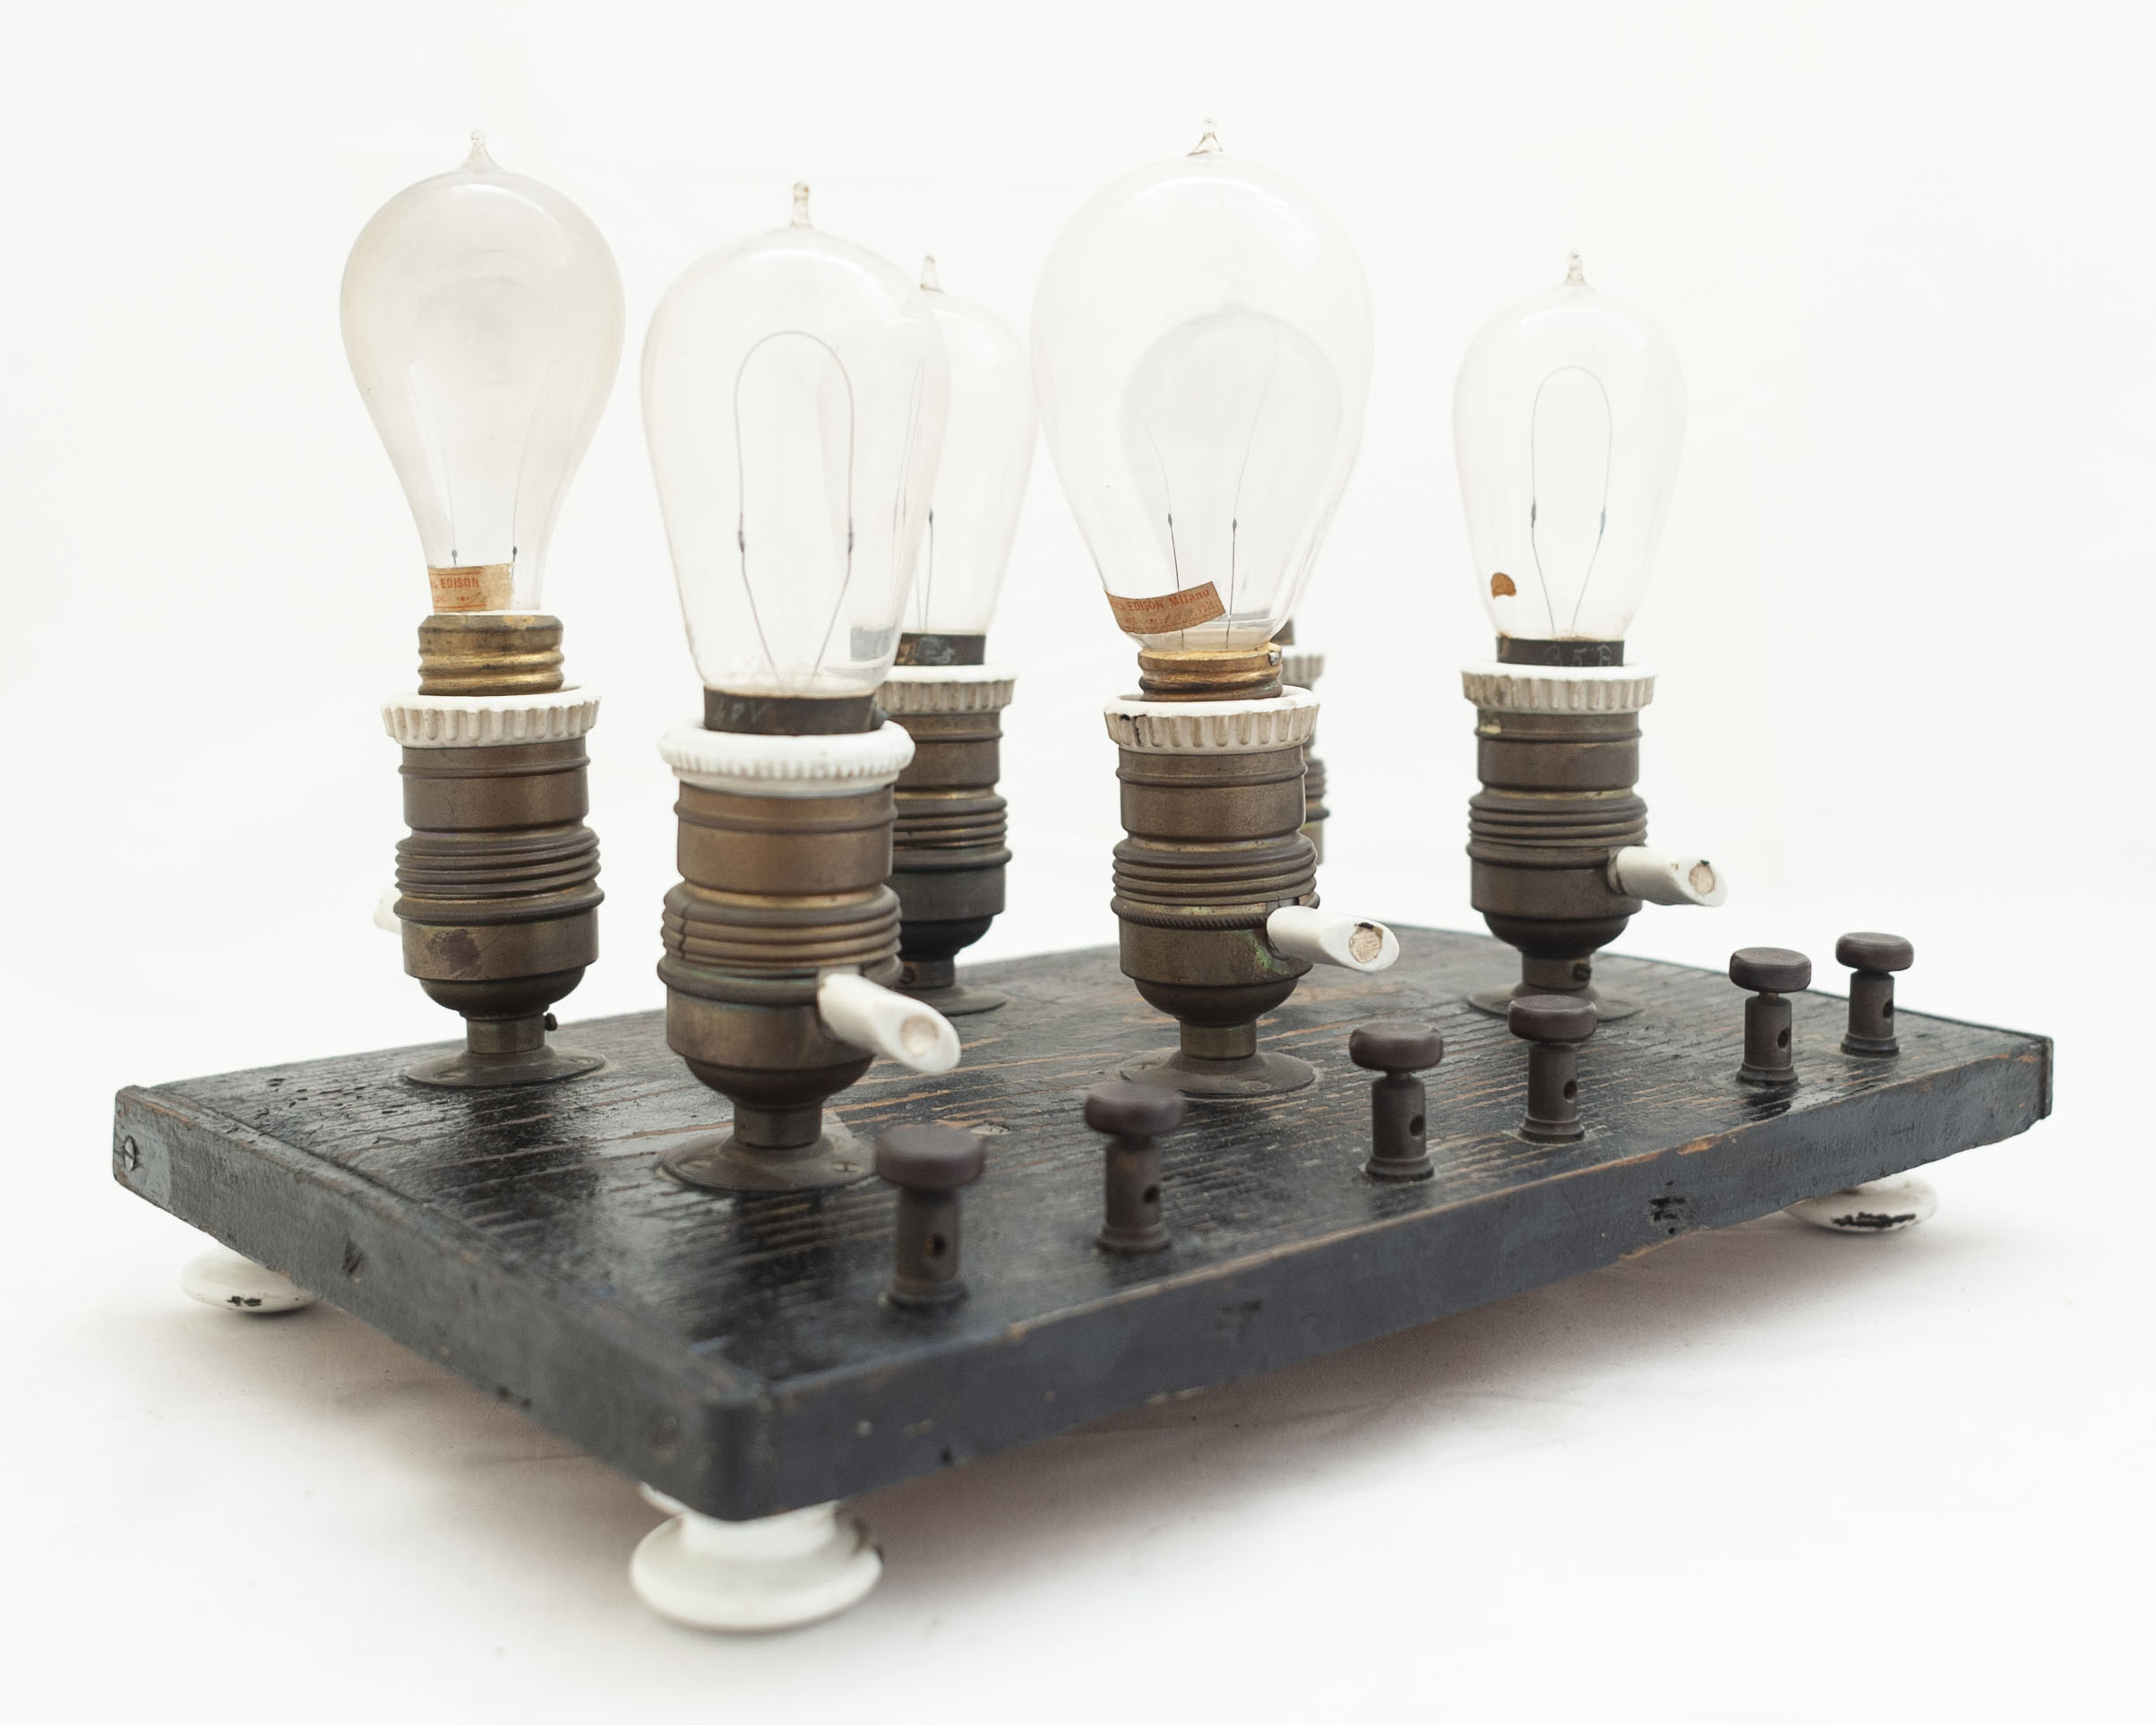 lampade ad incandescenza, a filamento di carbone, tipo Edison di Società Edison Milano, Edison, Thomas (fine XIX)